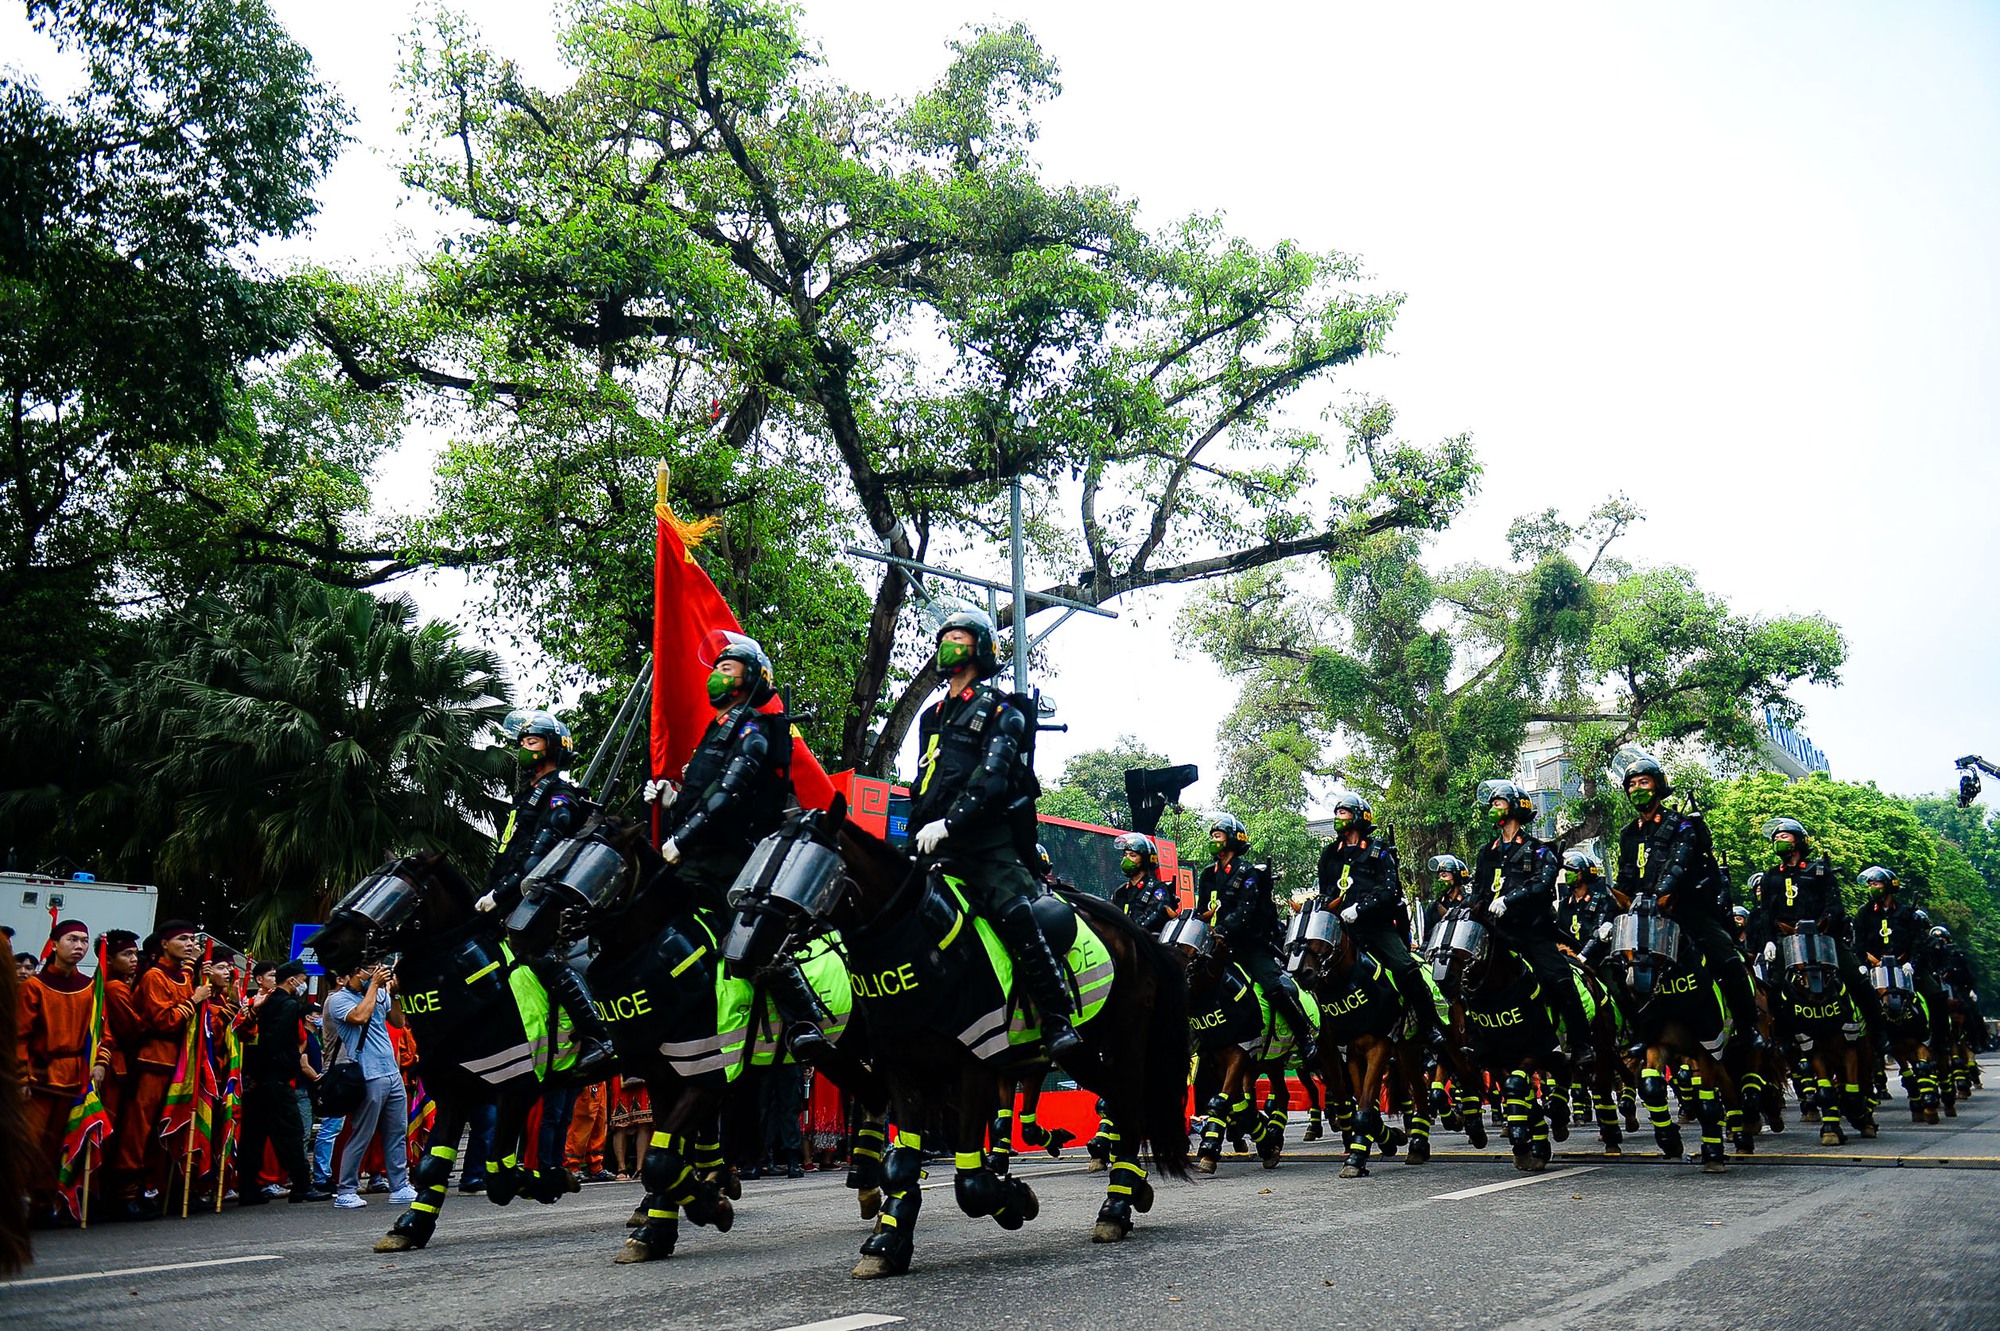 Mãn nhãn dàn kỵ binh diễu hành trên phố Hà Nội - Ảnh 6.